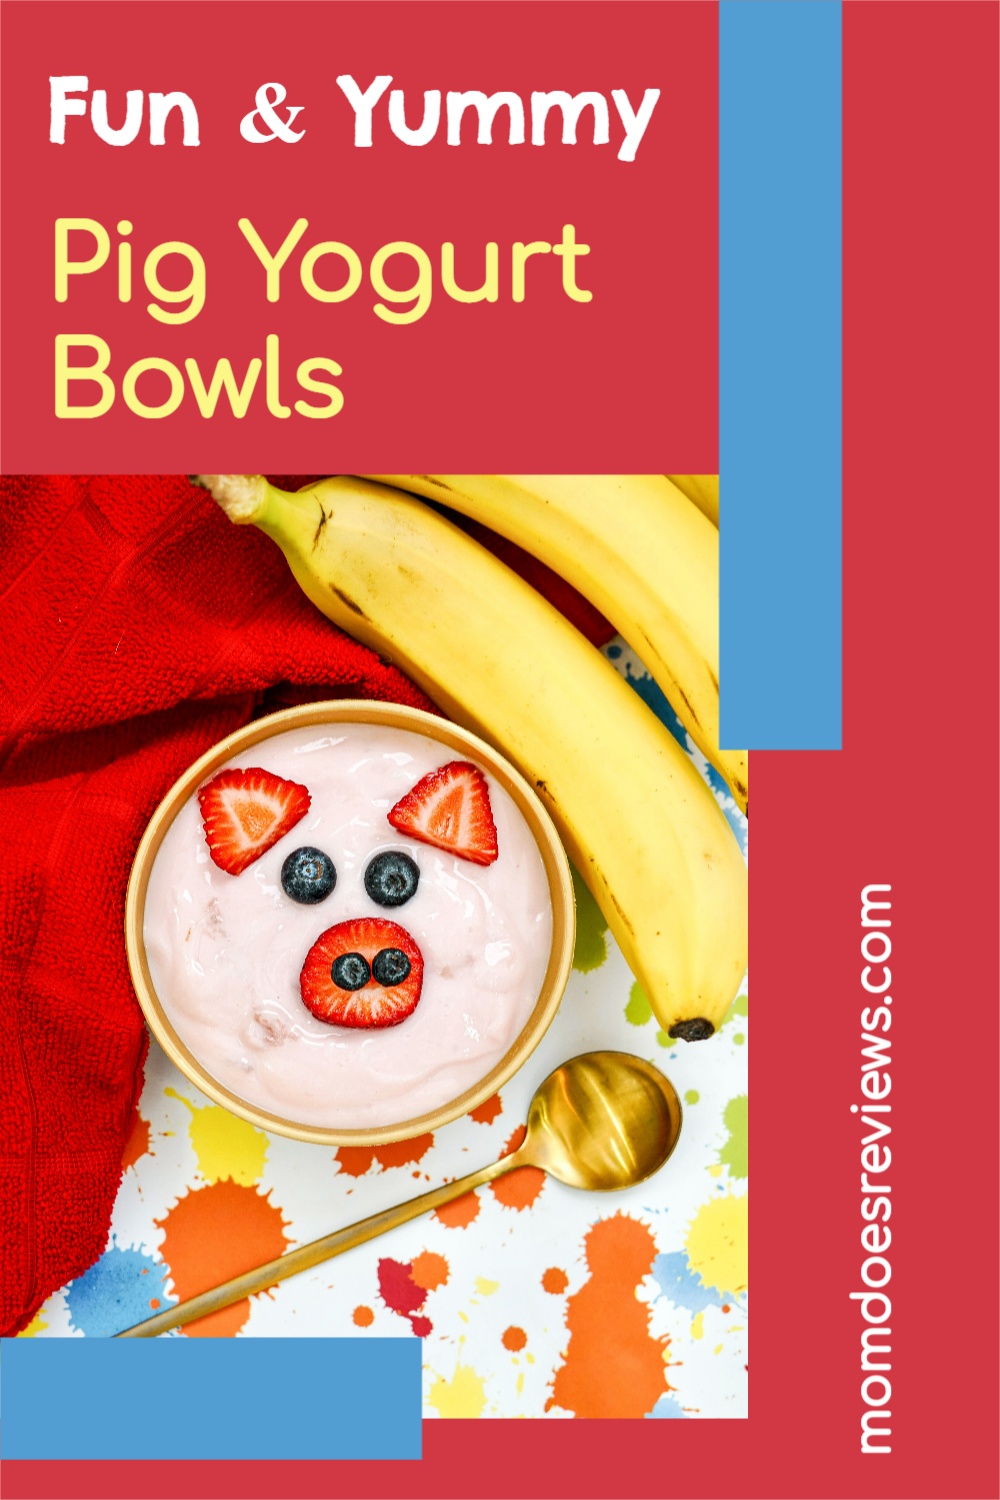 Fun and Yummy Pig Yogurt Bowls